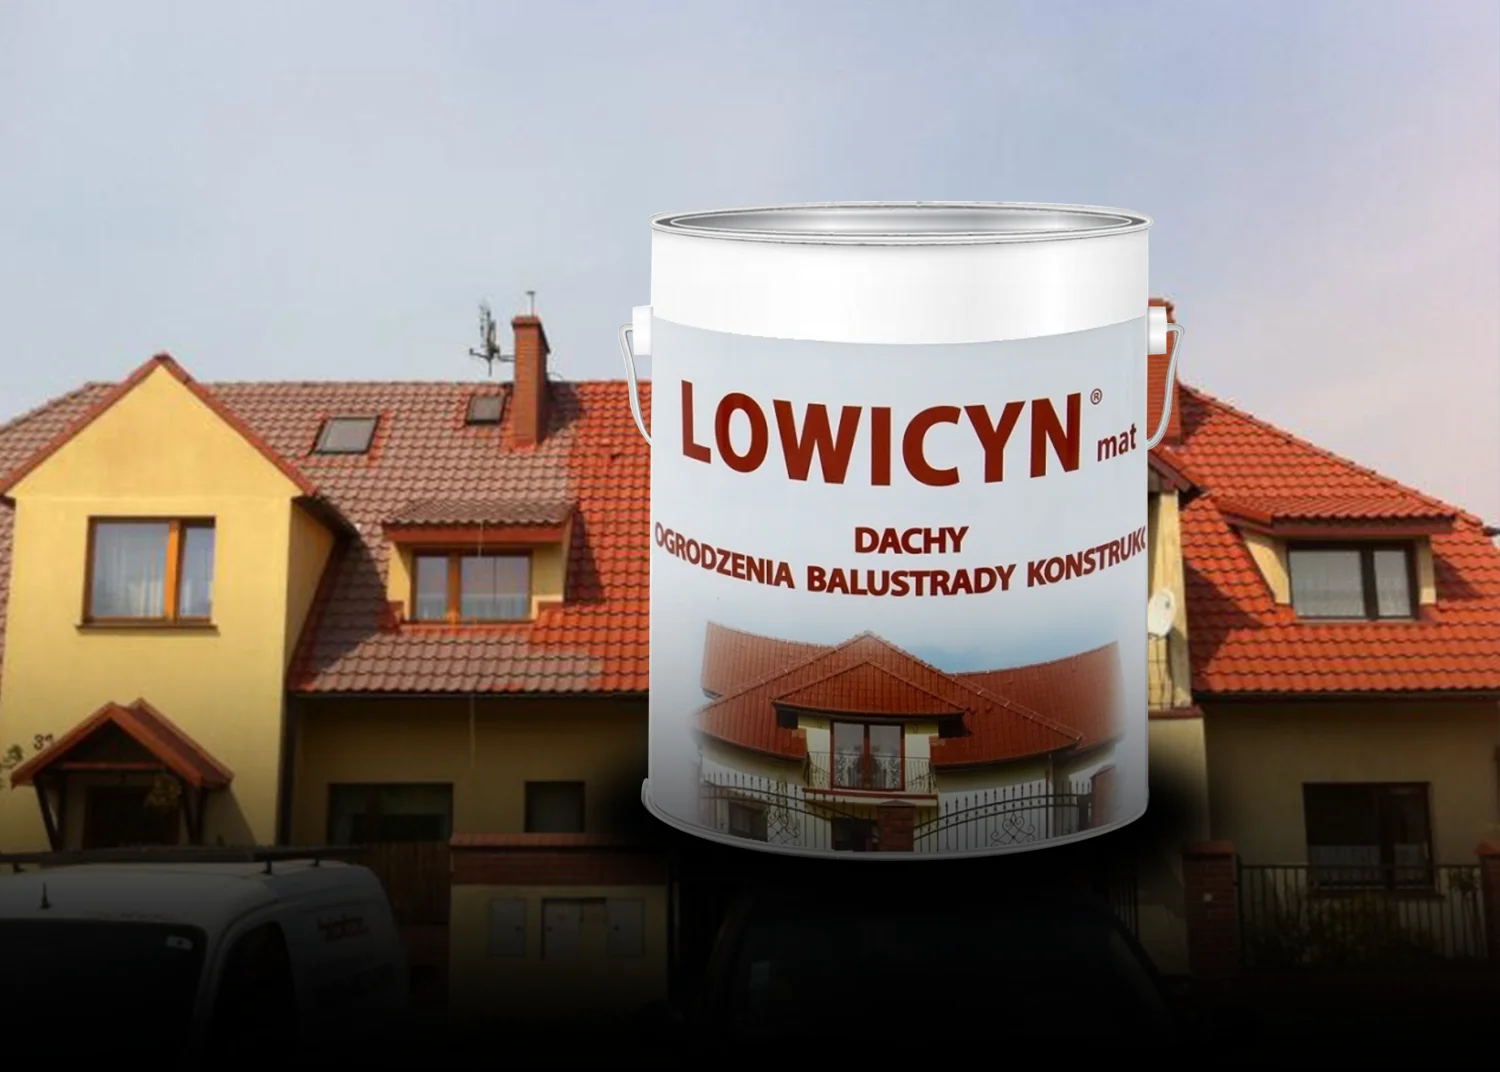 LOWICYN – Twój sprzymierzeniec w walce o piękny dach!